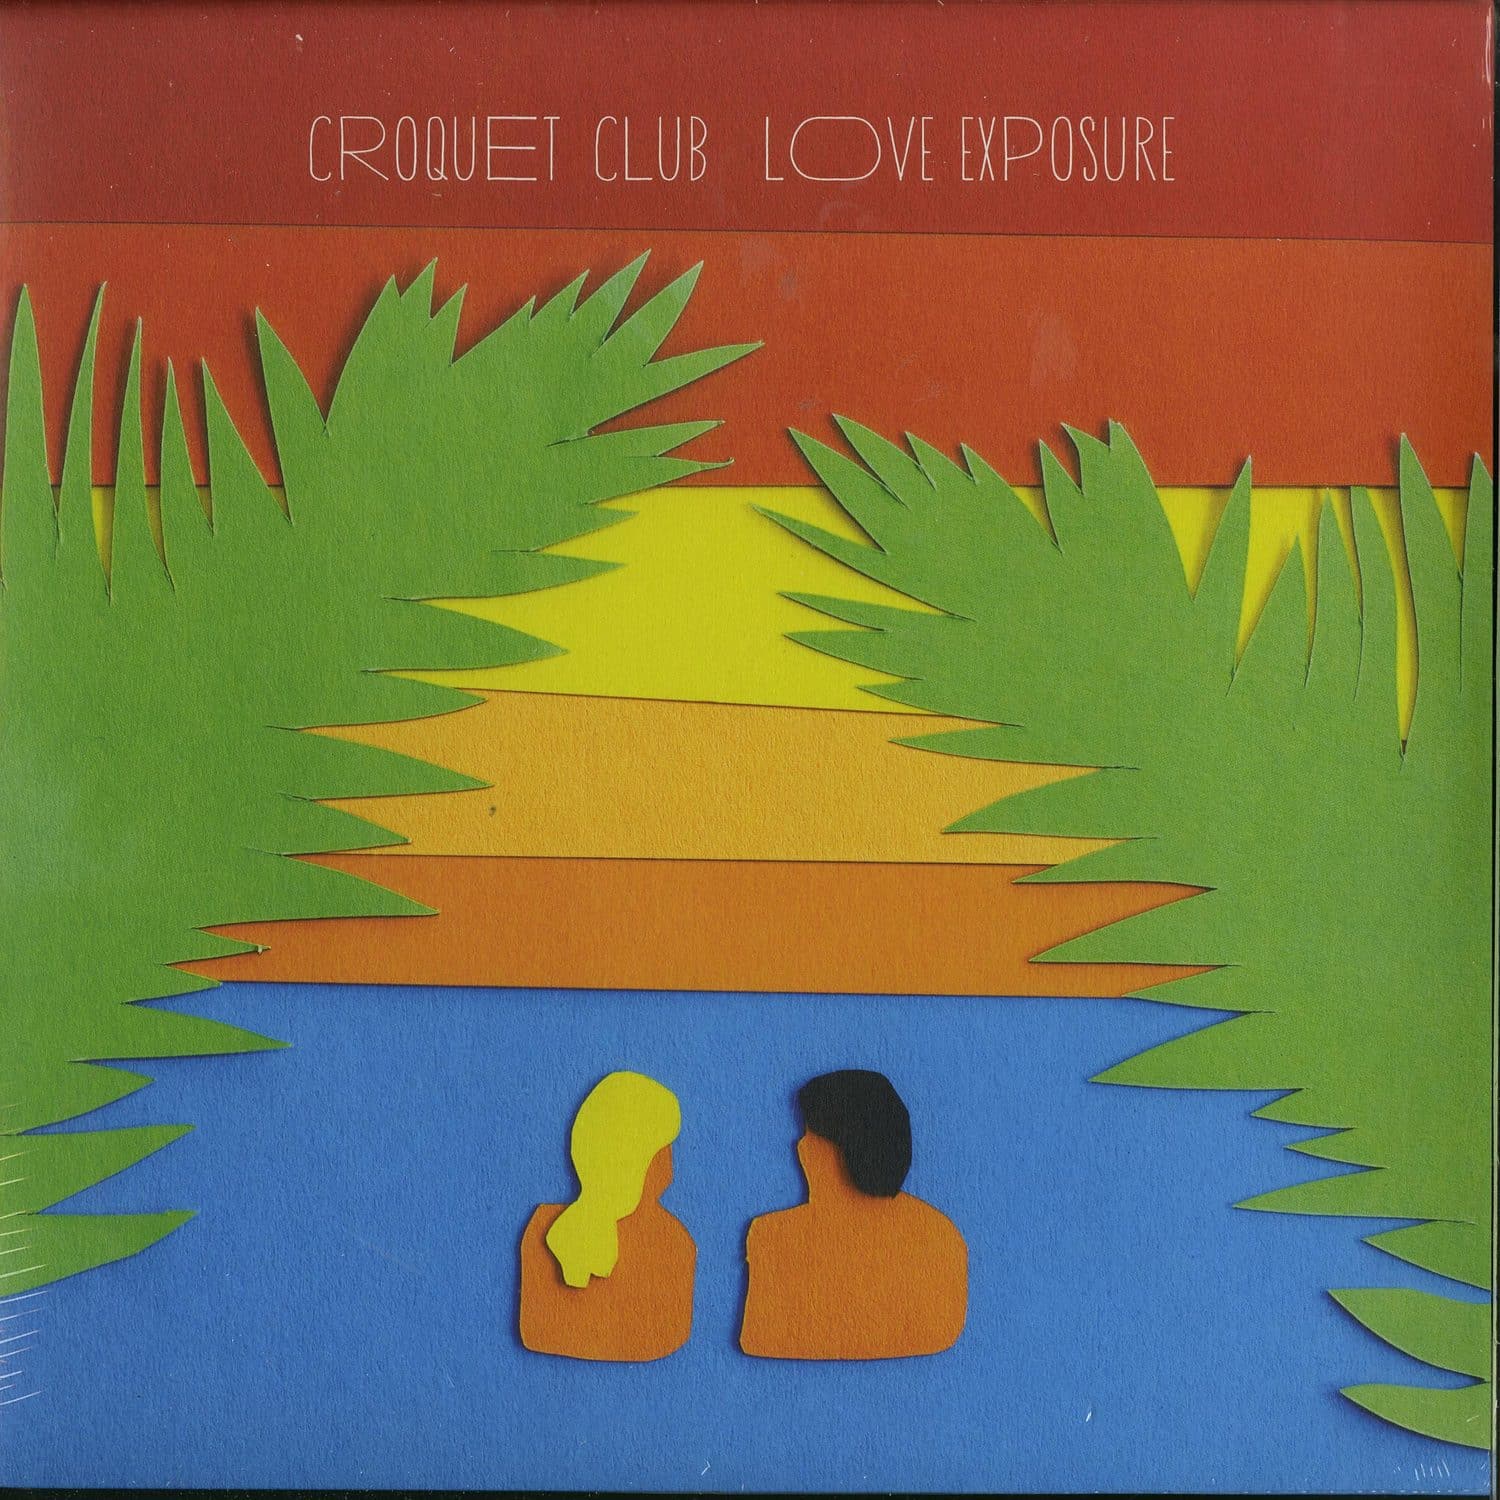 Croquet Club - LOVE EXPOSURE